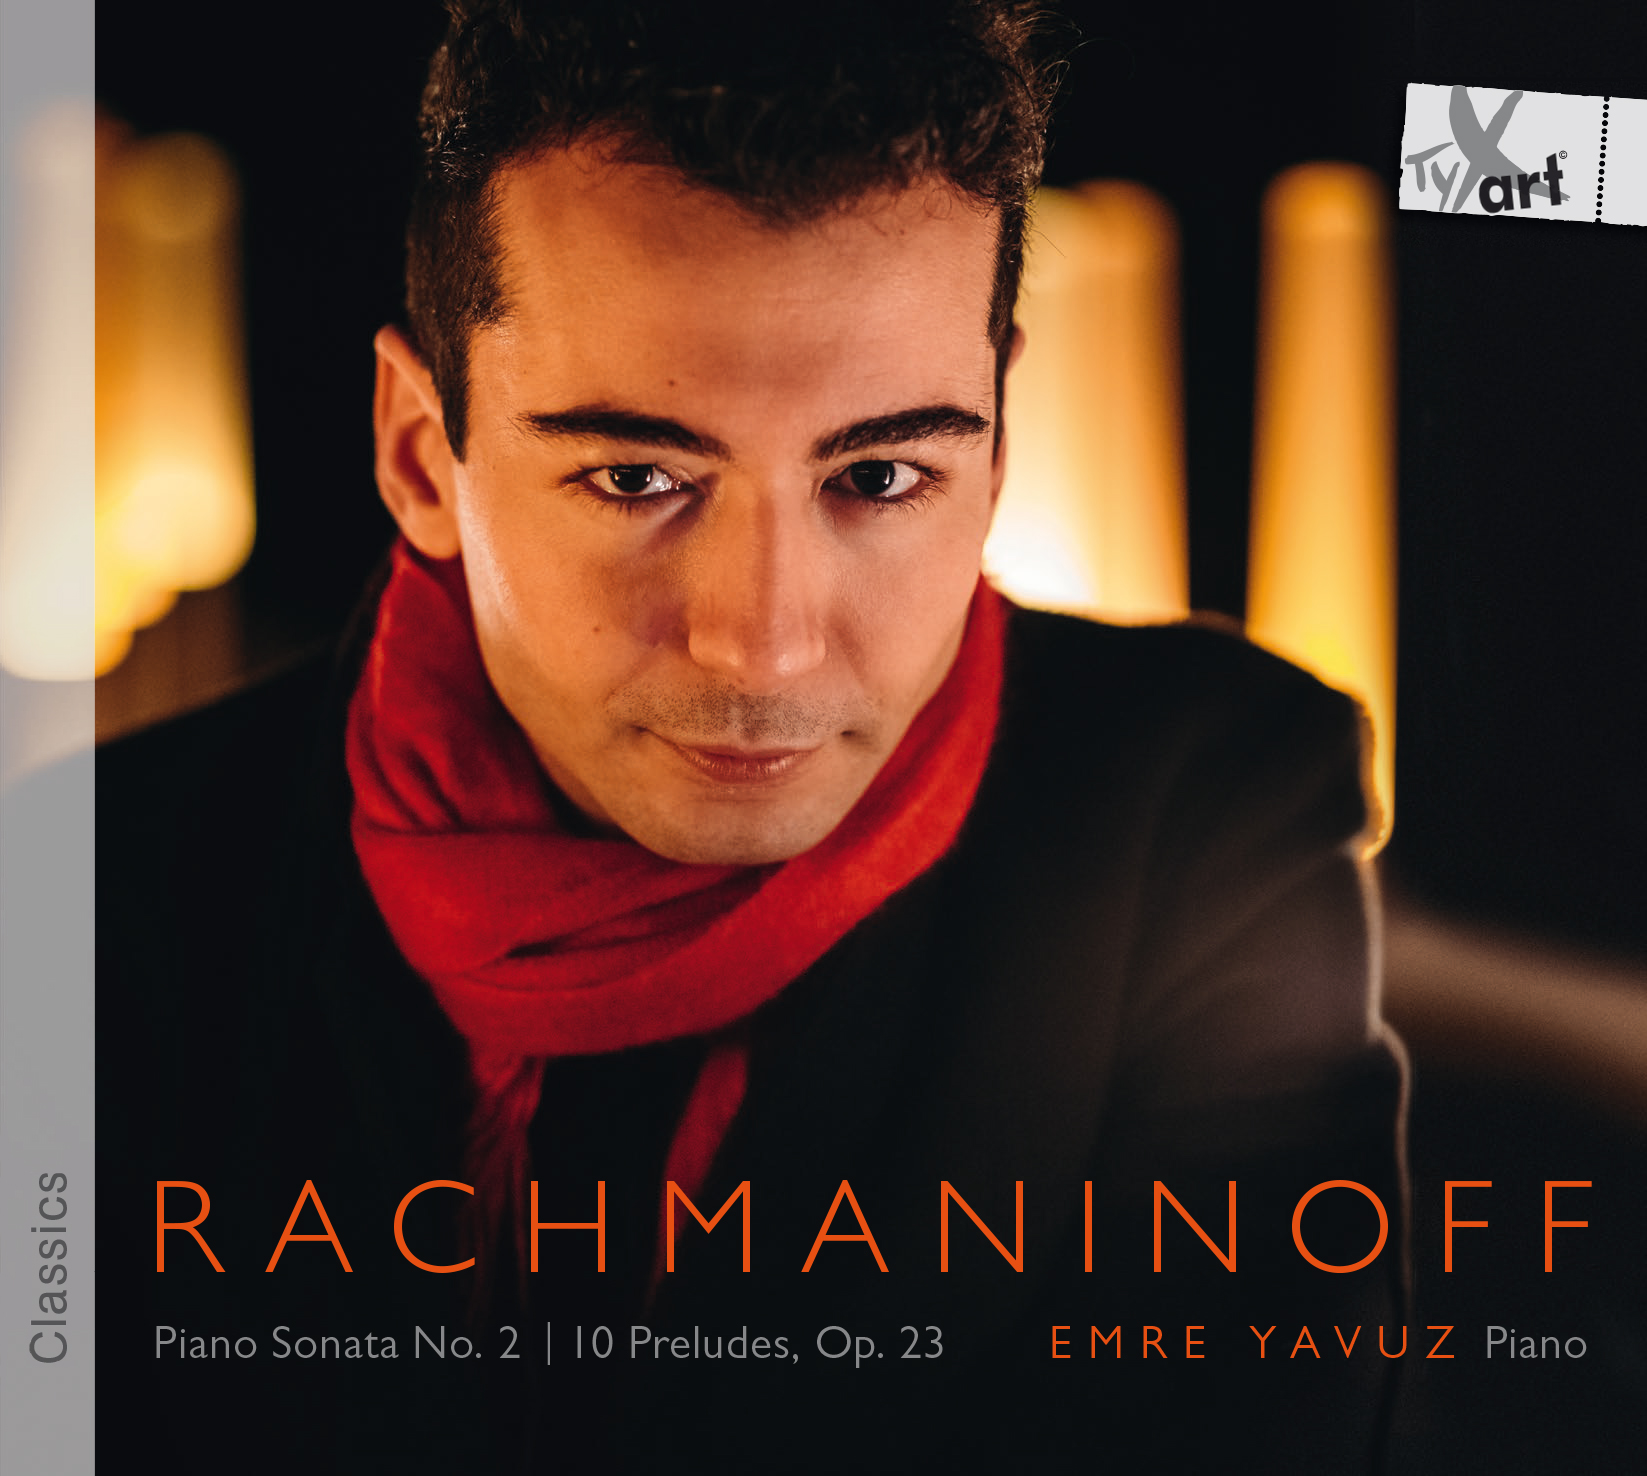 Rachmaninoff - Sonata No. 2 and Preludes Op. 23 - Emre Yavuz, Klavier